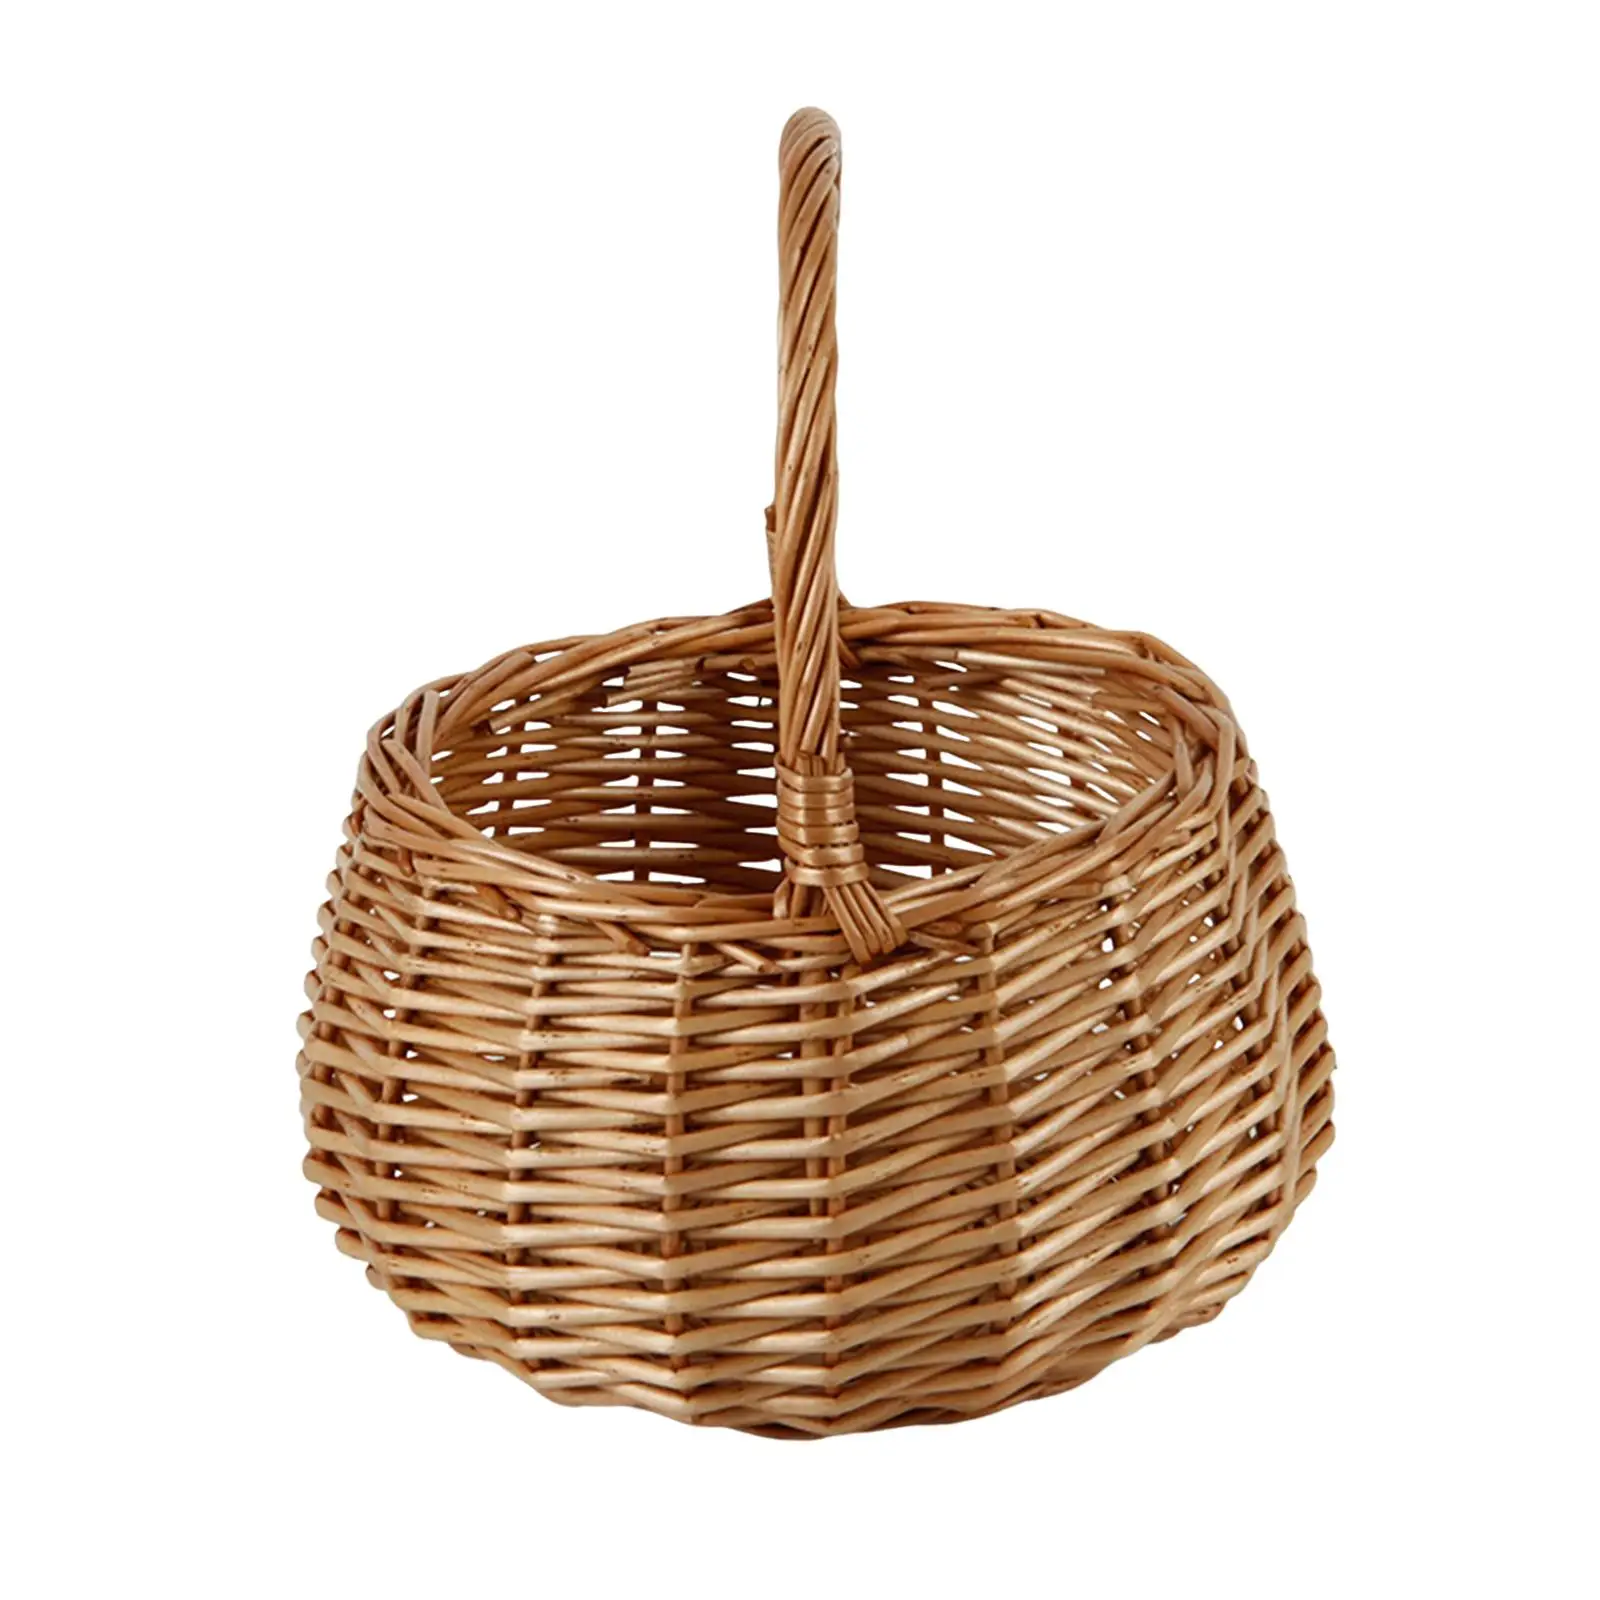 Wicker Storage Baskets Multipurpose Crafts Organizer Market Basket Housewarmingh Gift Sturdy for Garden Camping